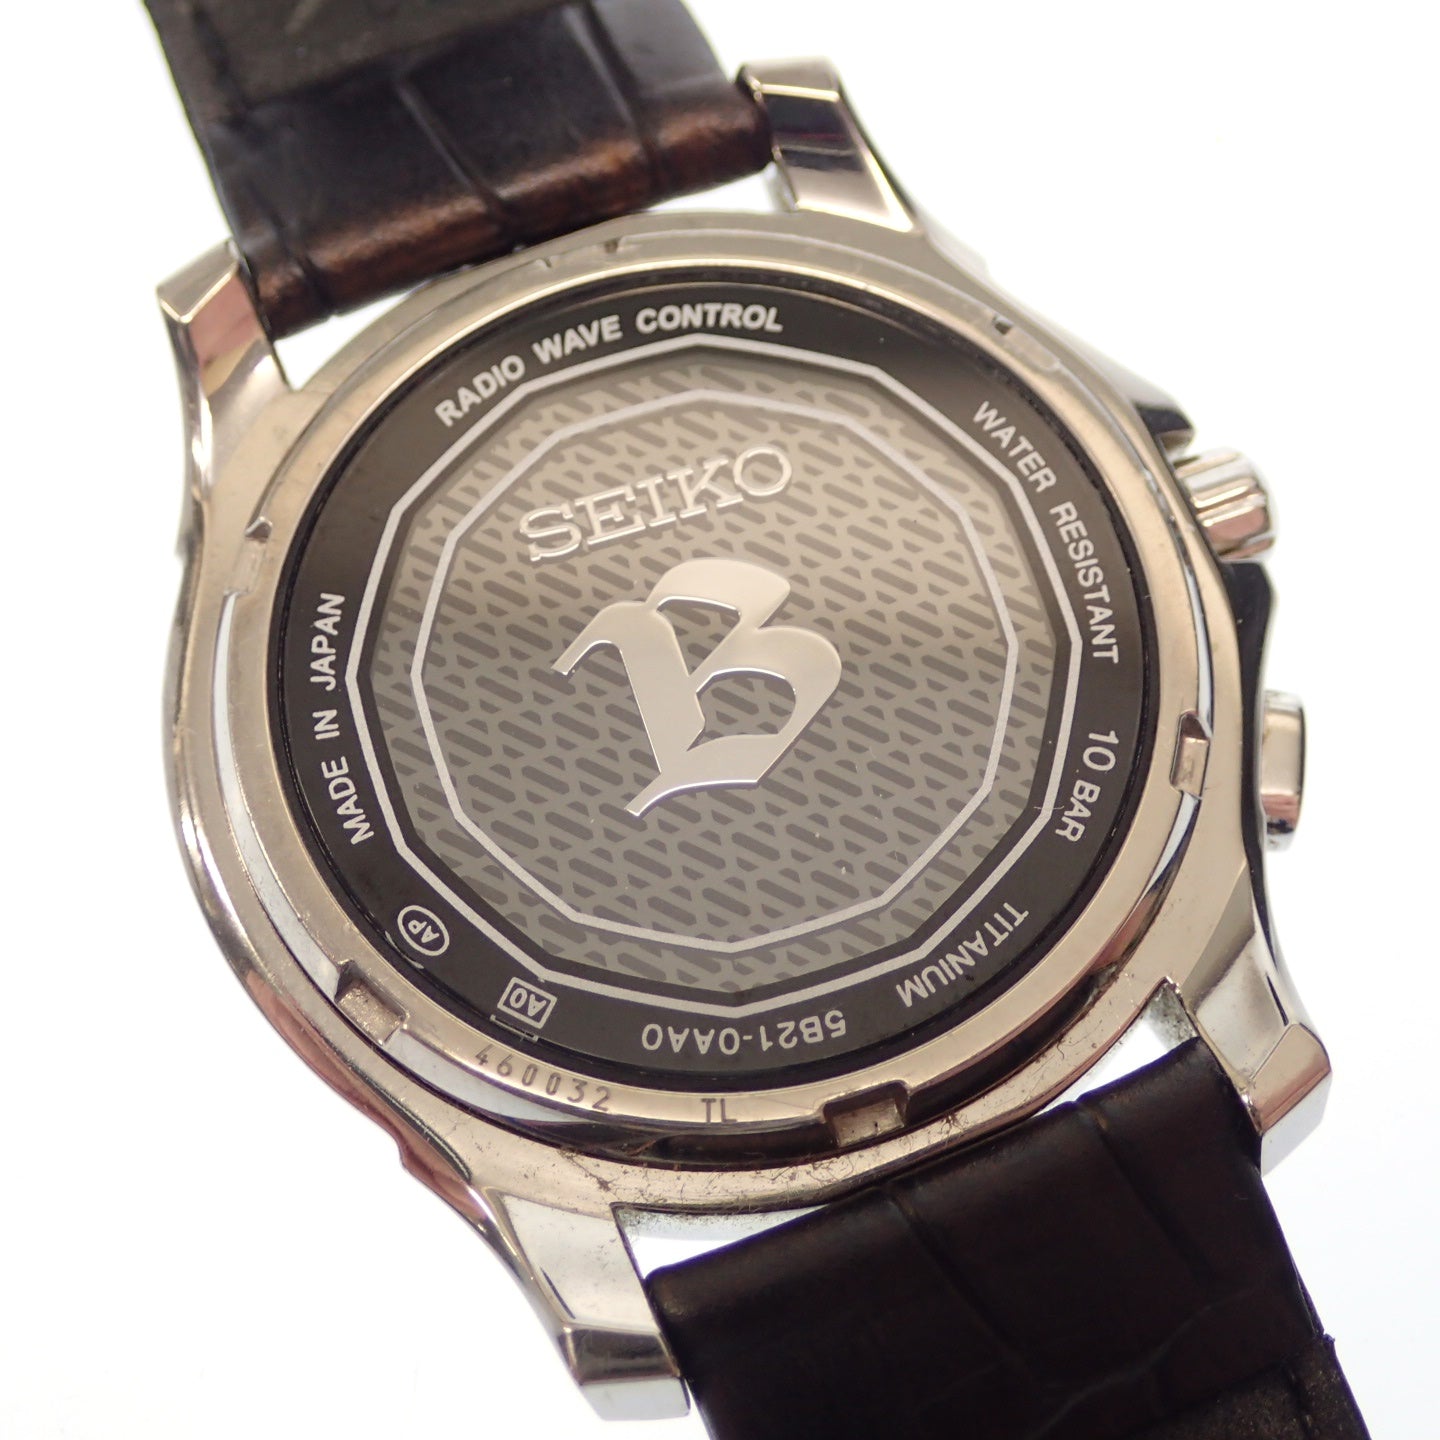 Used Seiko watch Brightz 5B21-0AA0 white dial solar radio SEIKO [AFI18] 